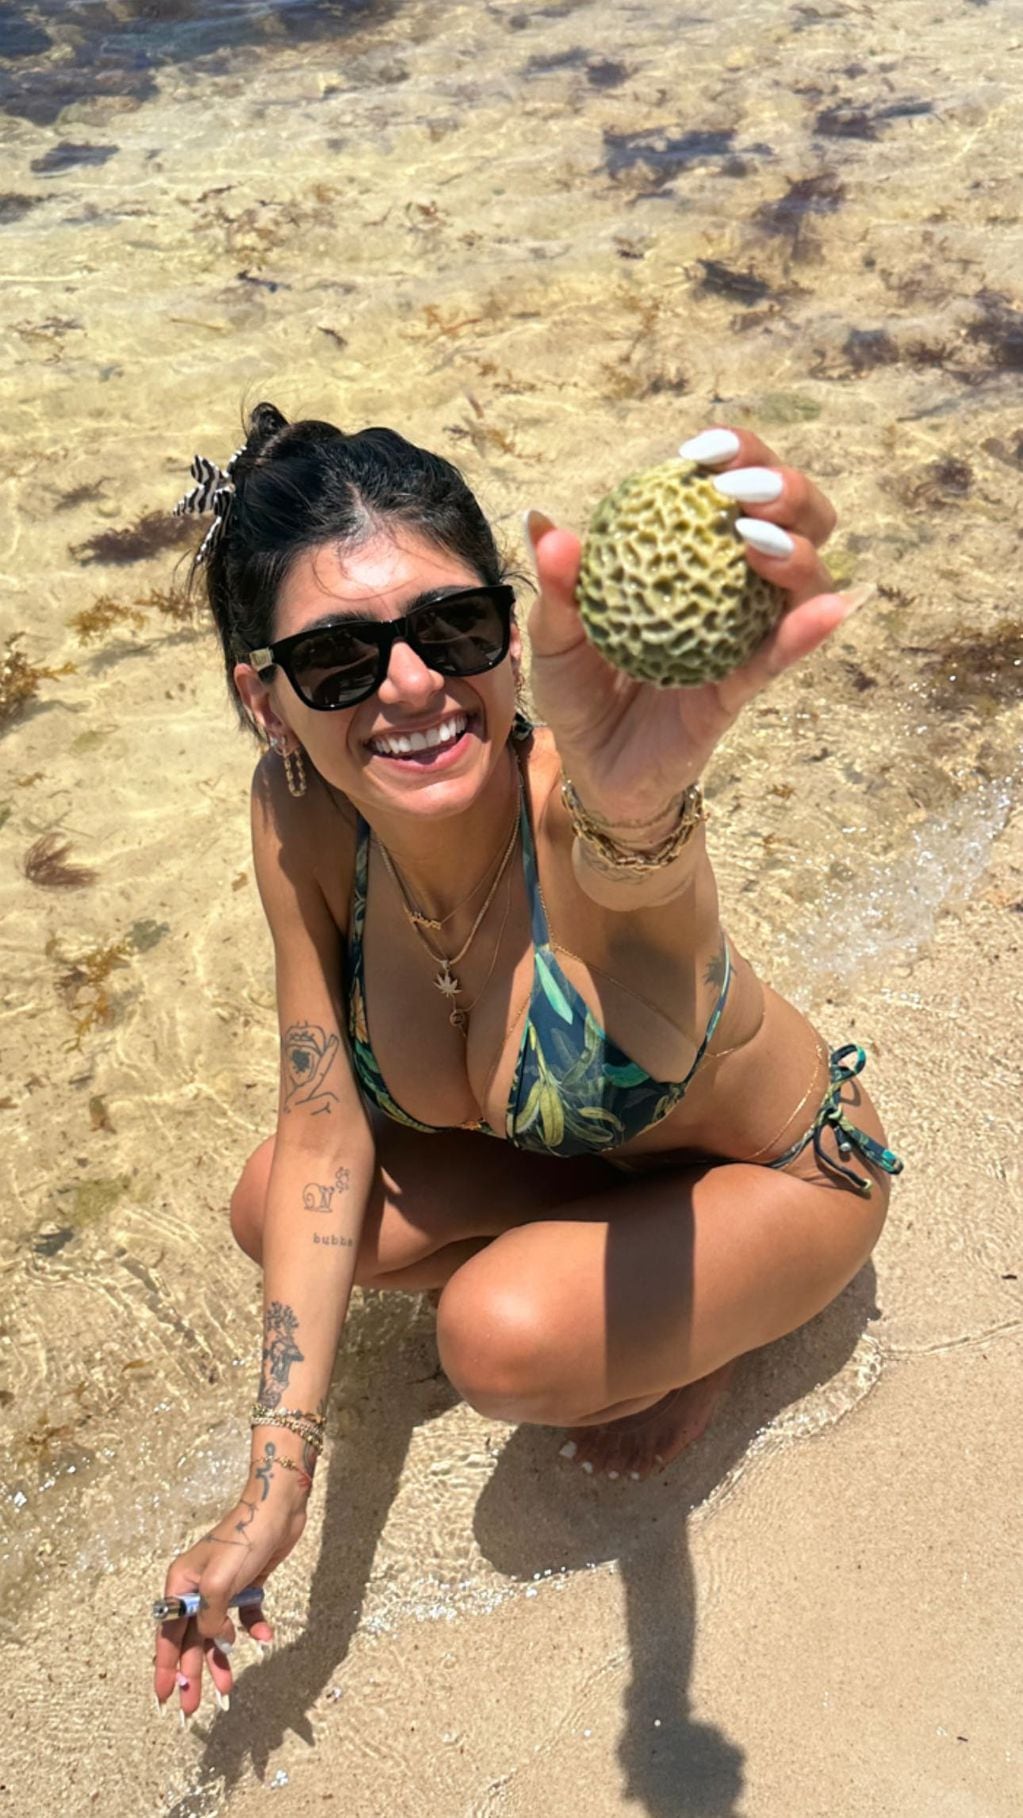 La modelo disfrutó de un día de calor en una bikini verde y se robó los suspiros de sus seguidores / Foto: Instagram